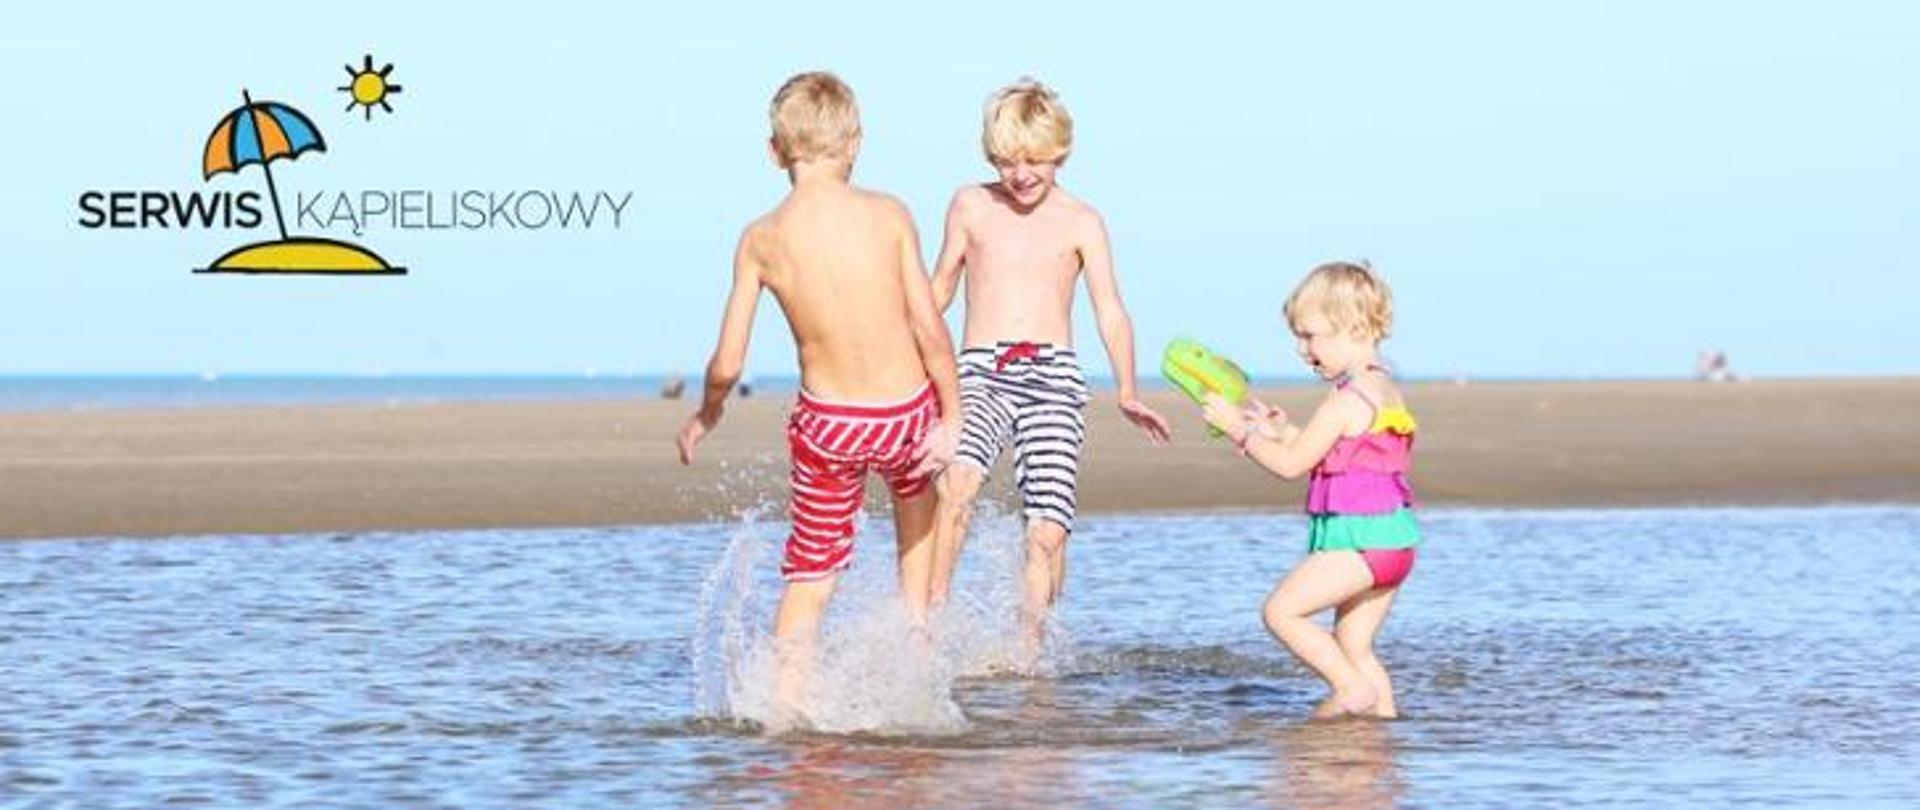 Dzieci bawią się na plaży w wodzie. W lewym górnym roku logo parasol wbity w piasek i słońce.